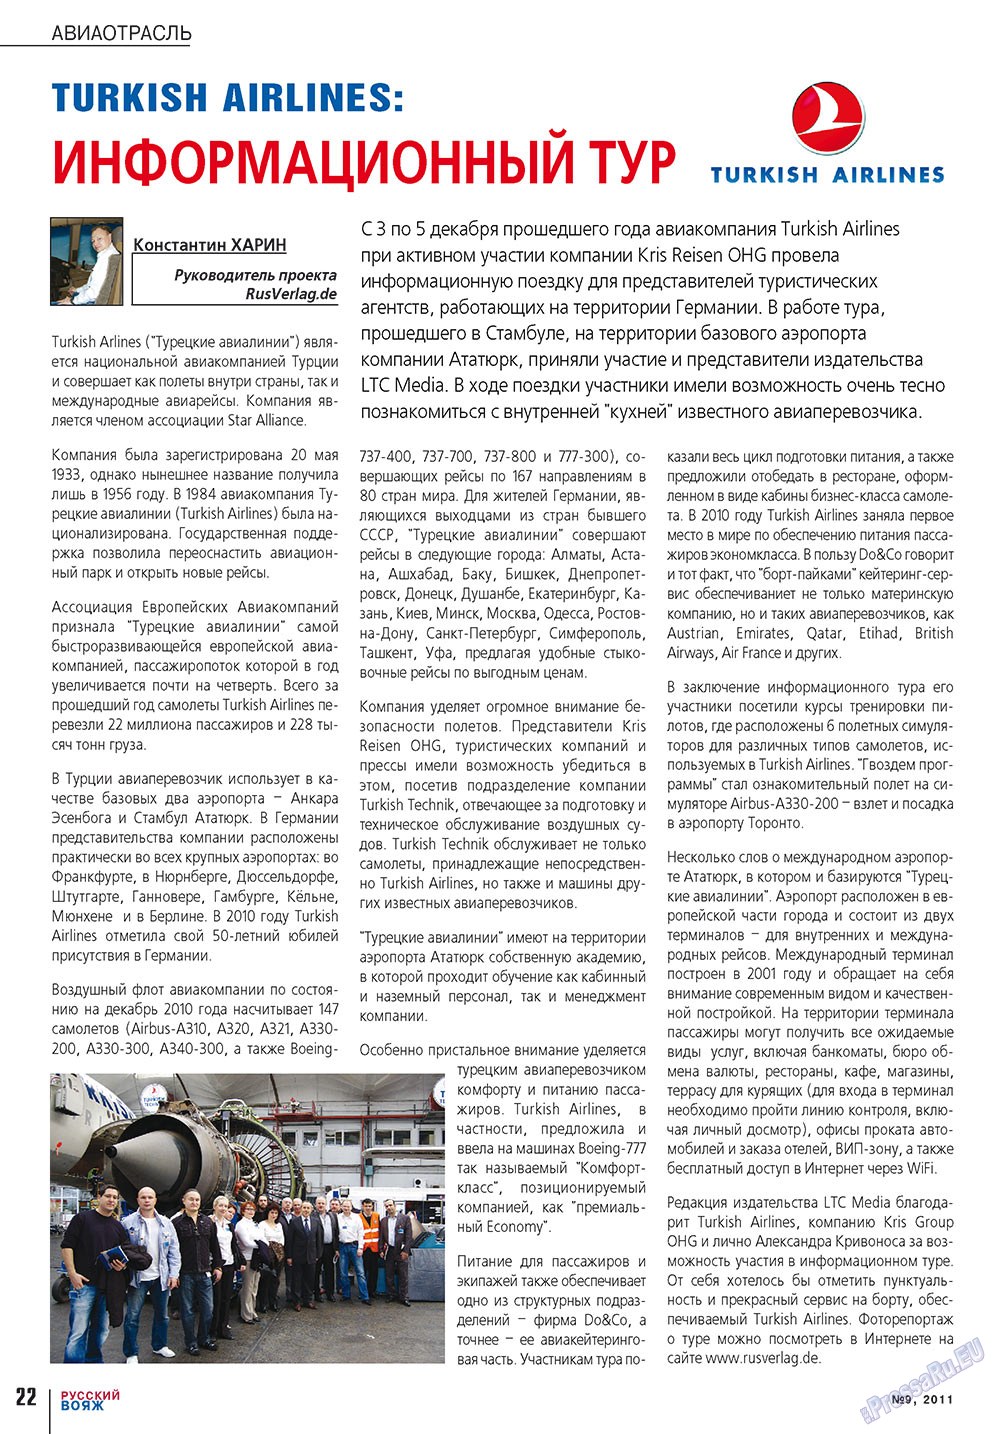 Русский вояж (журнал). 2011 год, номер 9, стр. 22